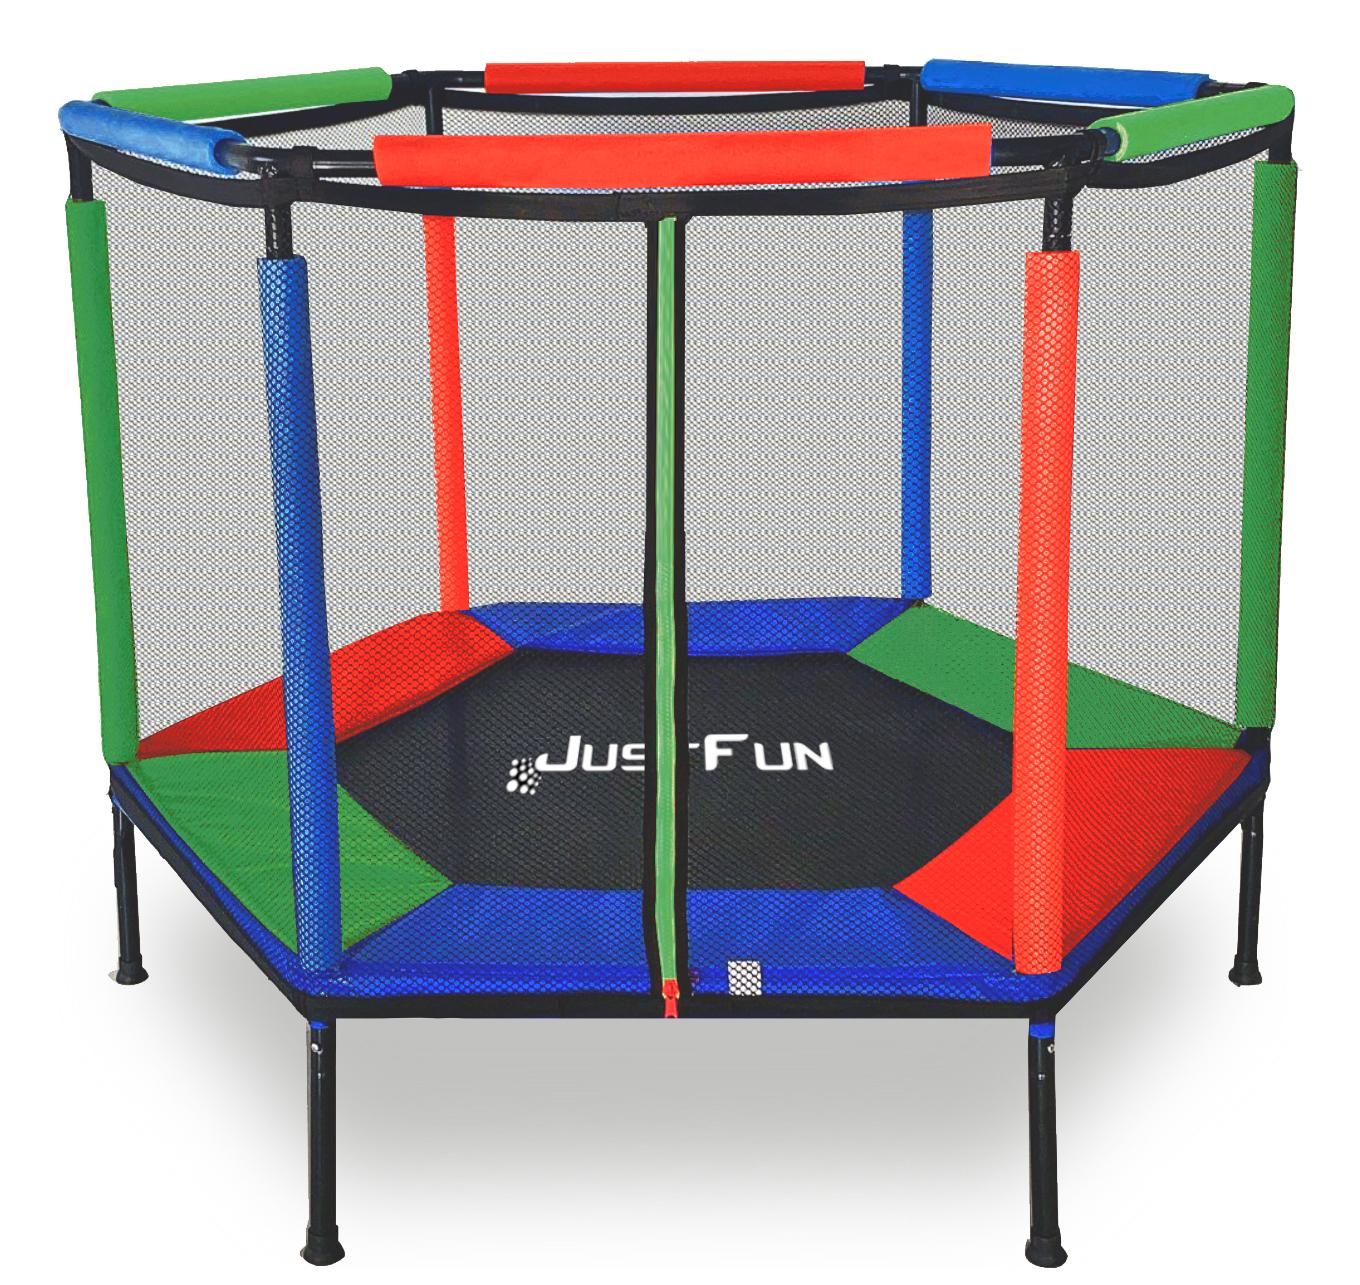 Батут-манеж Just Fun с защитной сеткой 140 см Синий/Зеленый/Красный (6909711)